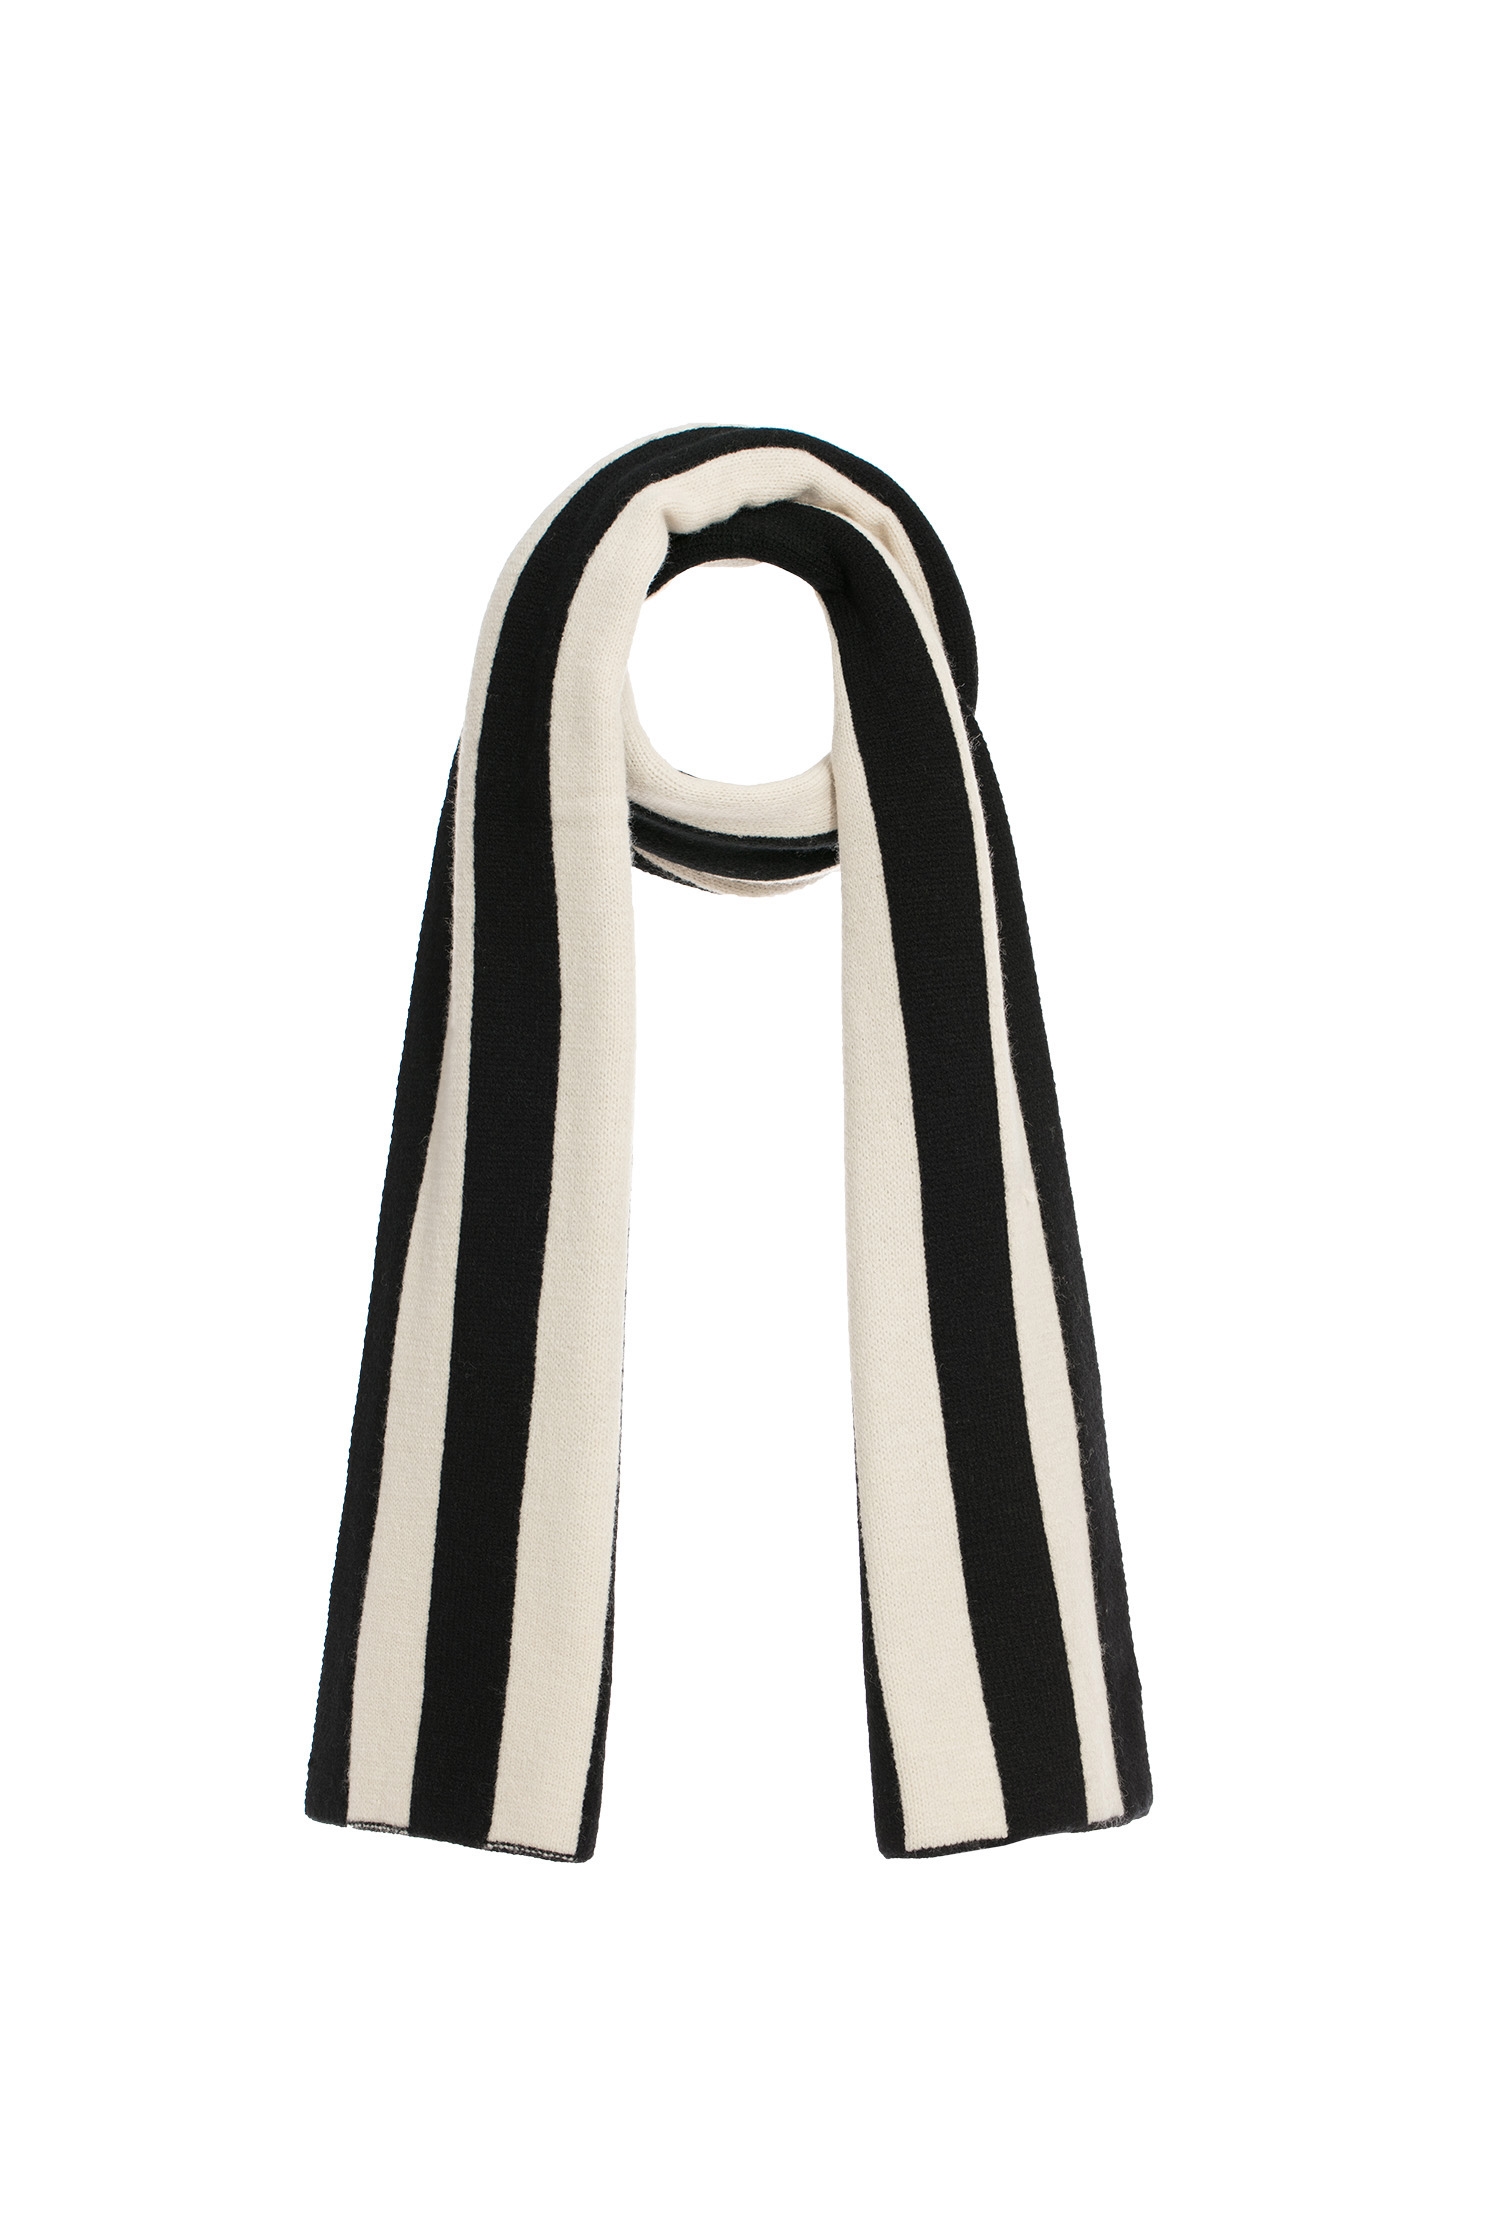 經典黑白條紋圍巾經典黑白條紋圍巾,圍巾,春夏穿搭,條紋